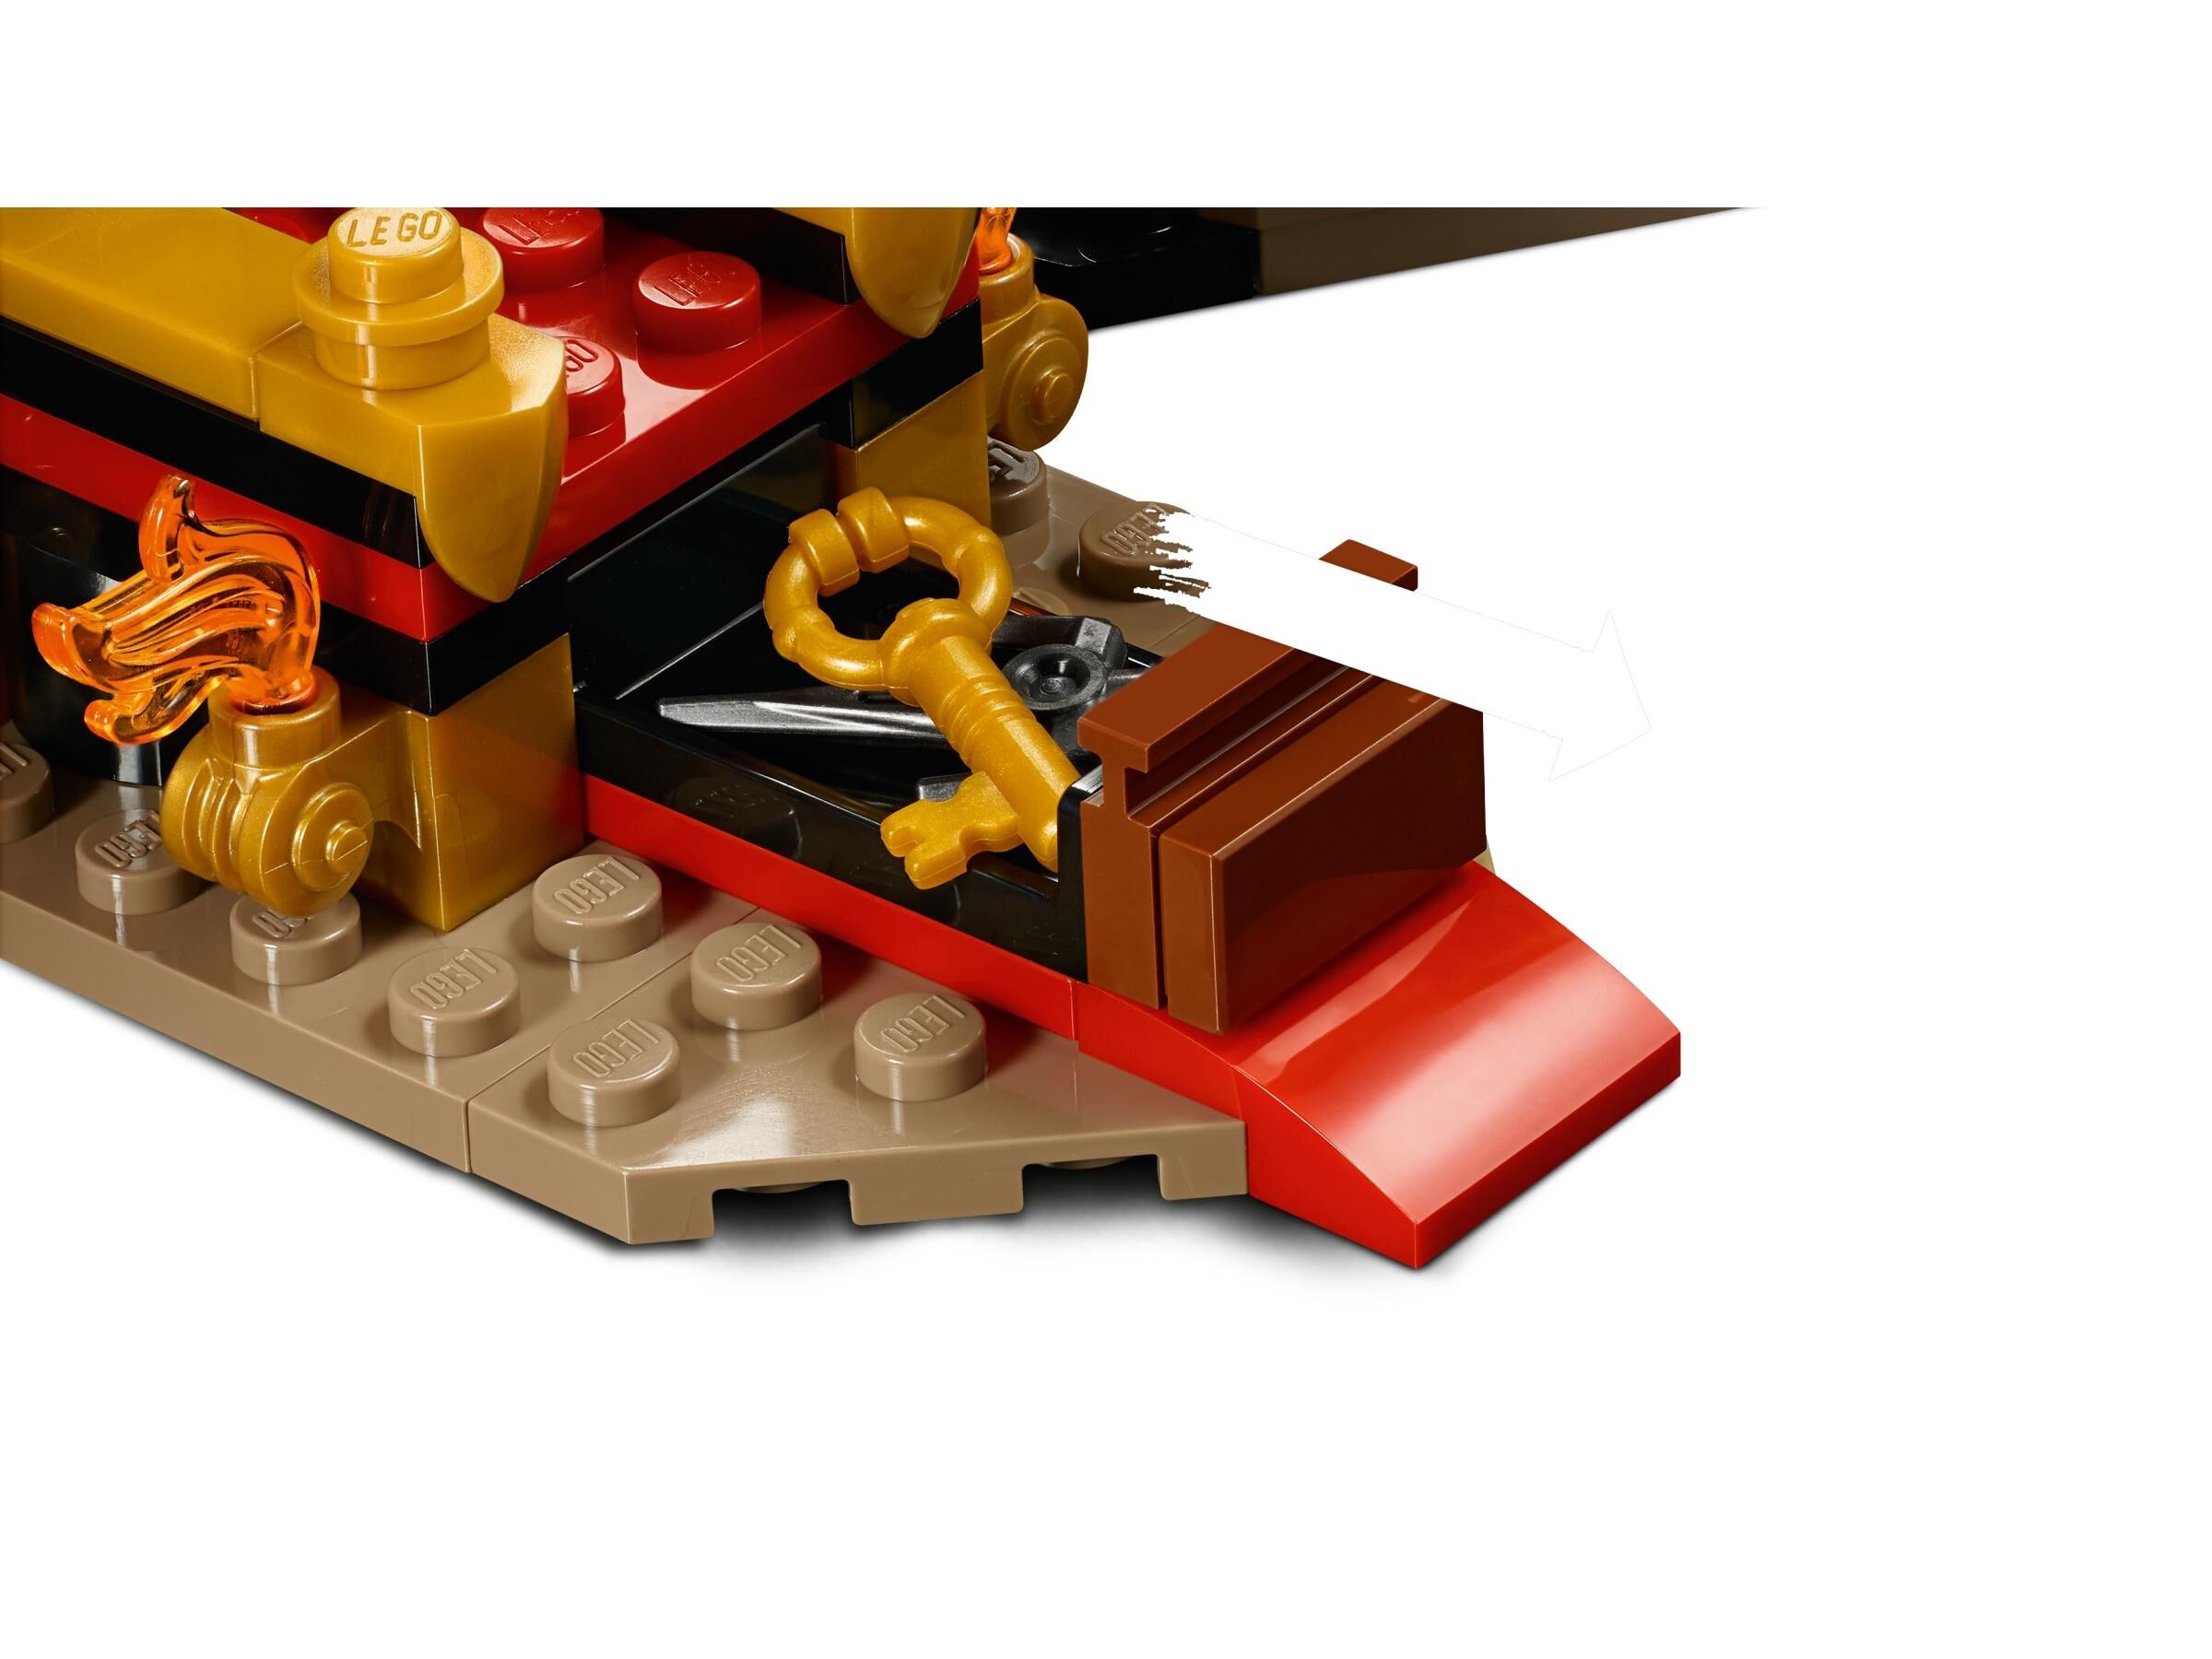 LEGO® Throne Room Showdown 70651 | 🇺🇸 Price Comparison